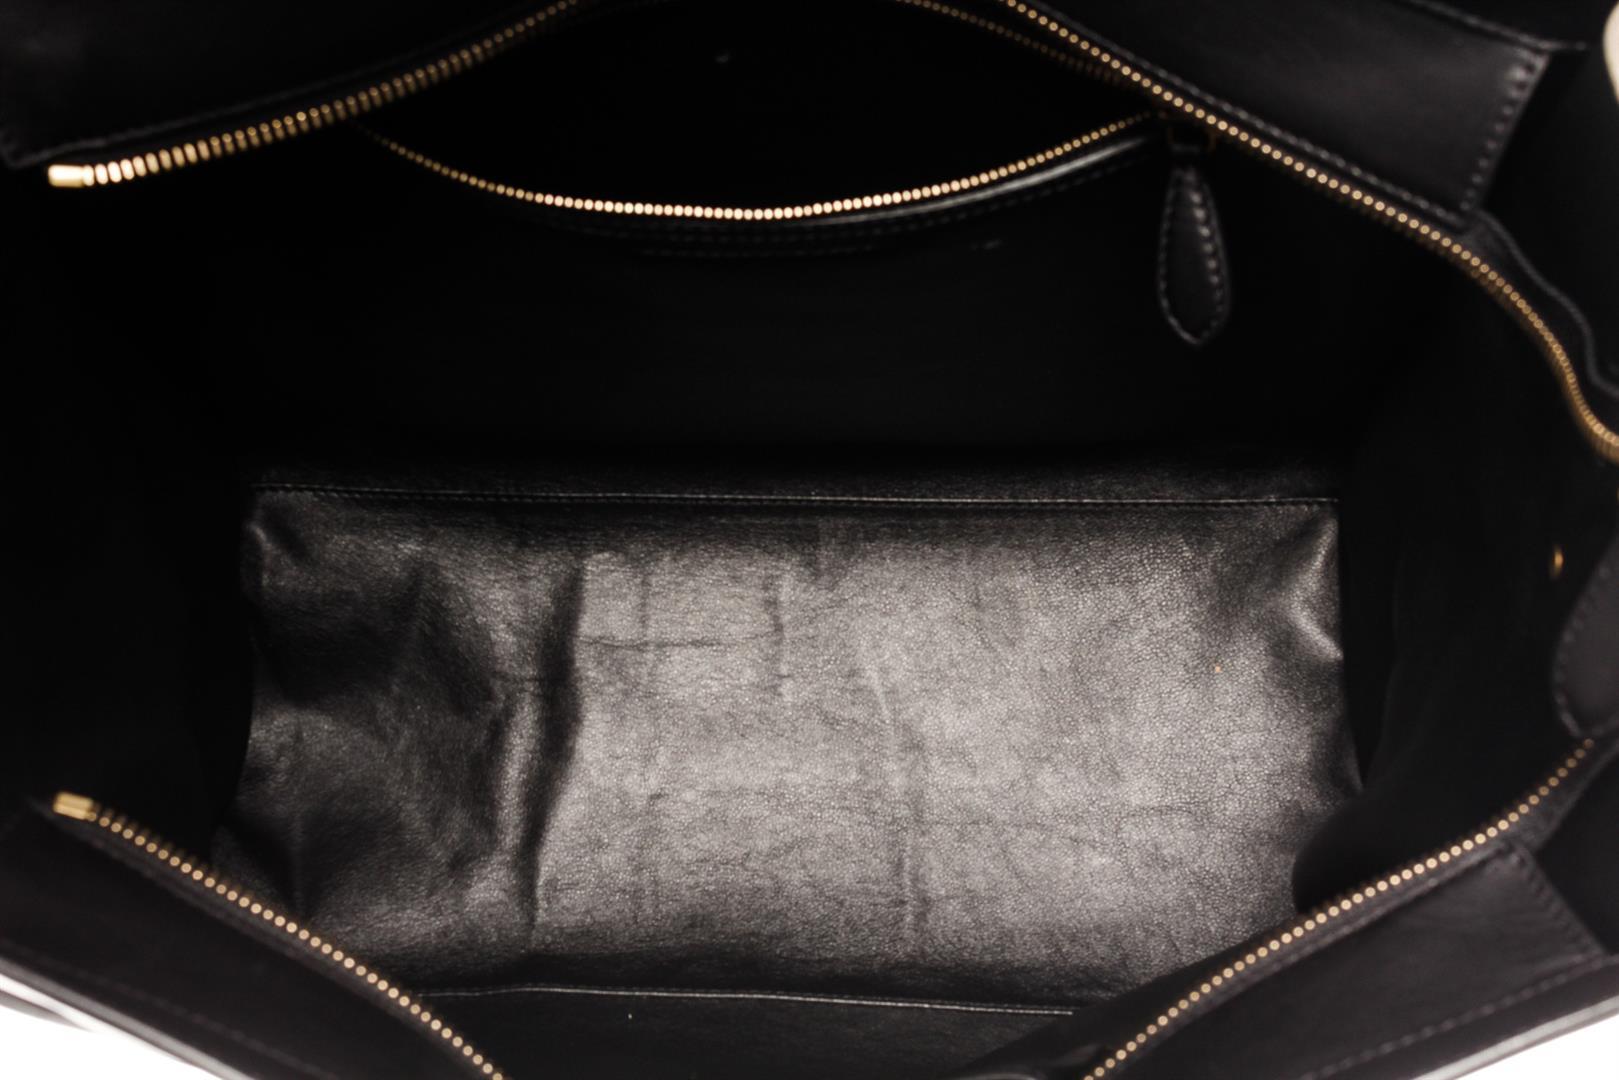 Celine Black Multicolor Suede Leather Micro Luggage Handbag